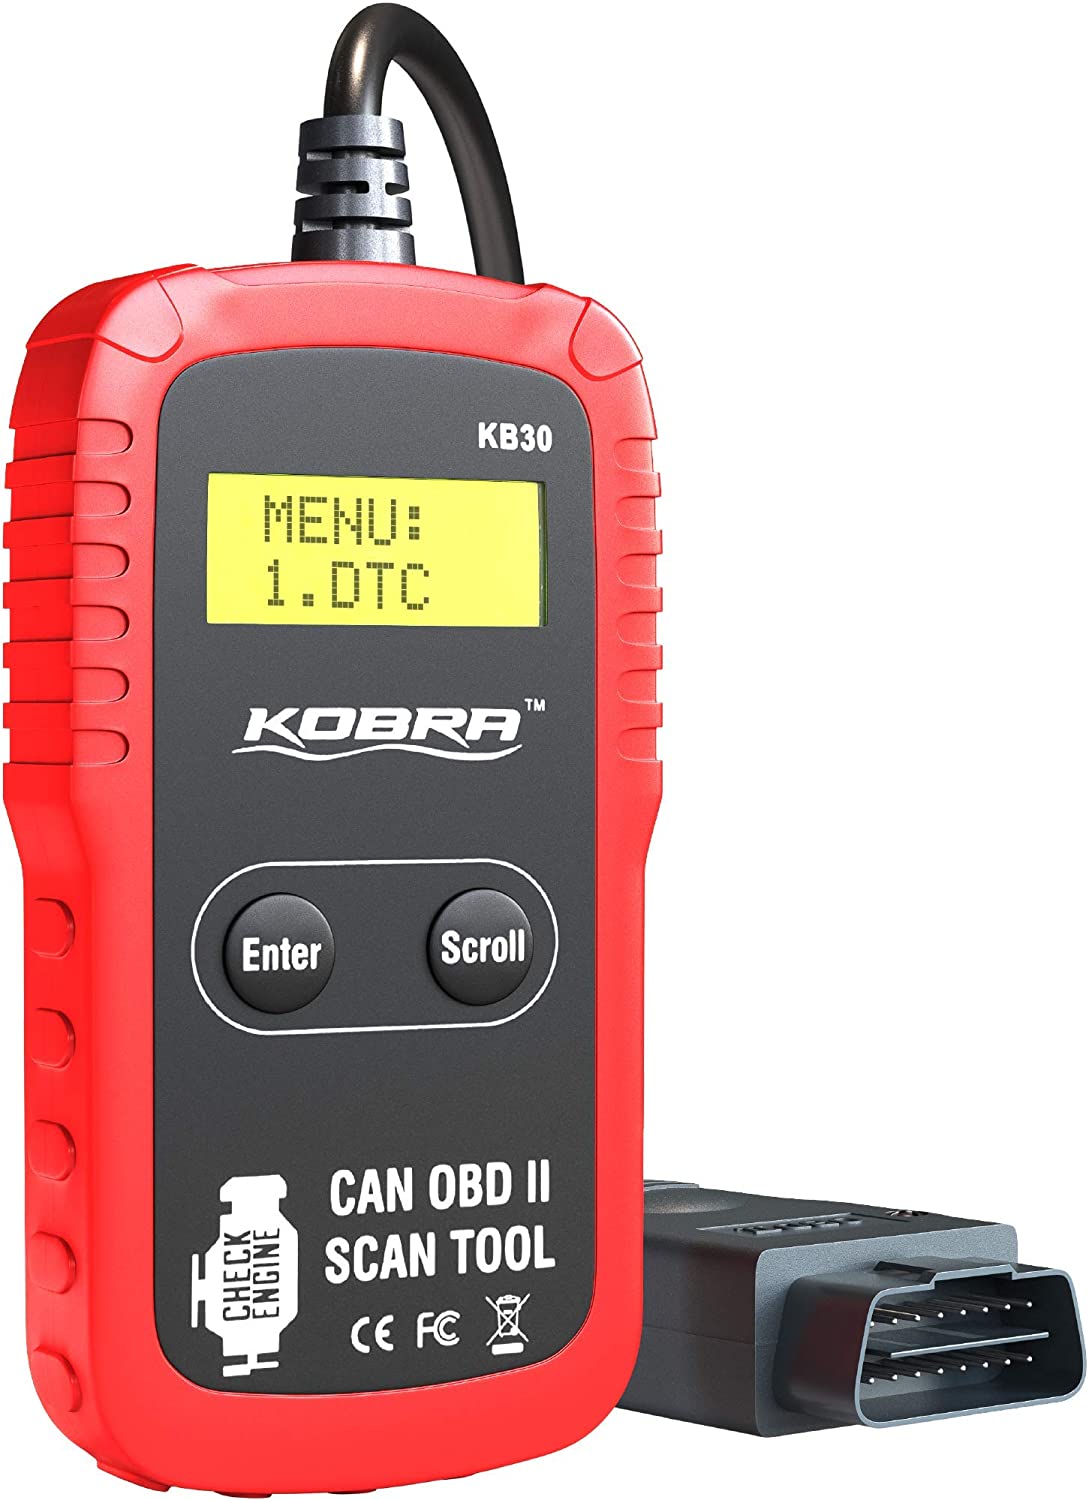 Car Diagnostic Tools - OBD2 Scanners & Code Readers